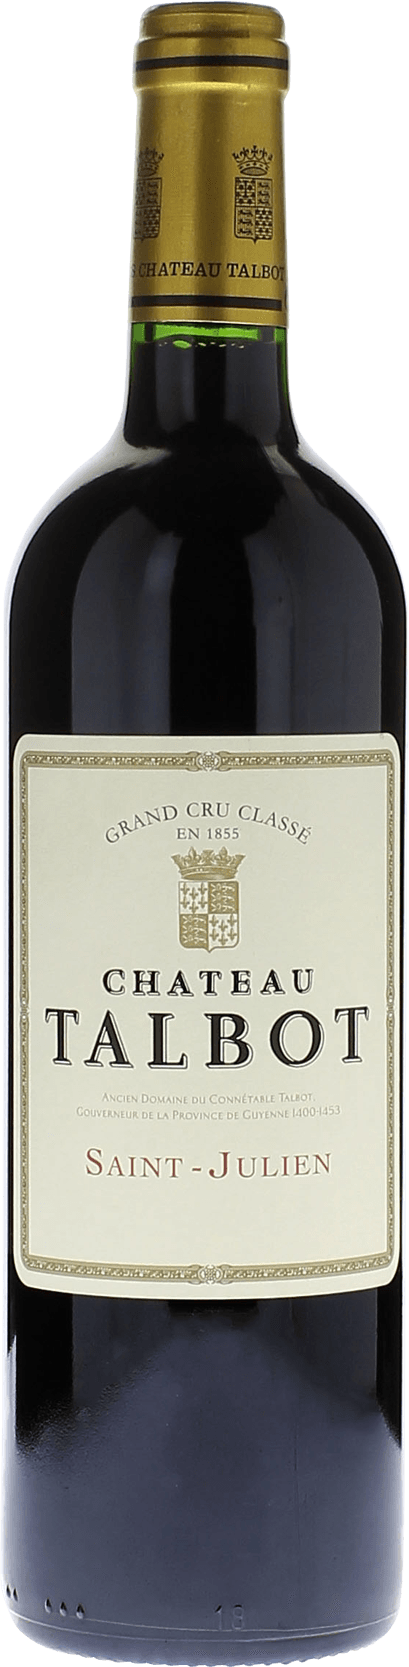 Talbot 1994 4me Grand cru class Saint-Julien, Bordeaux rouge